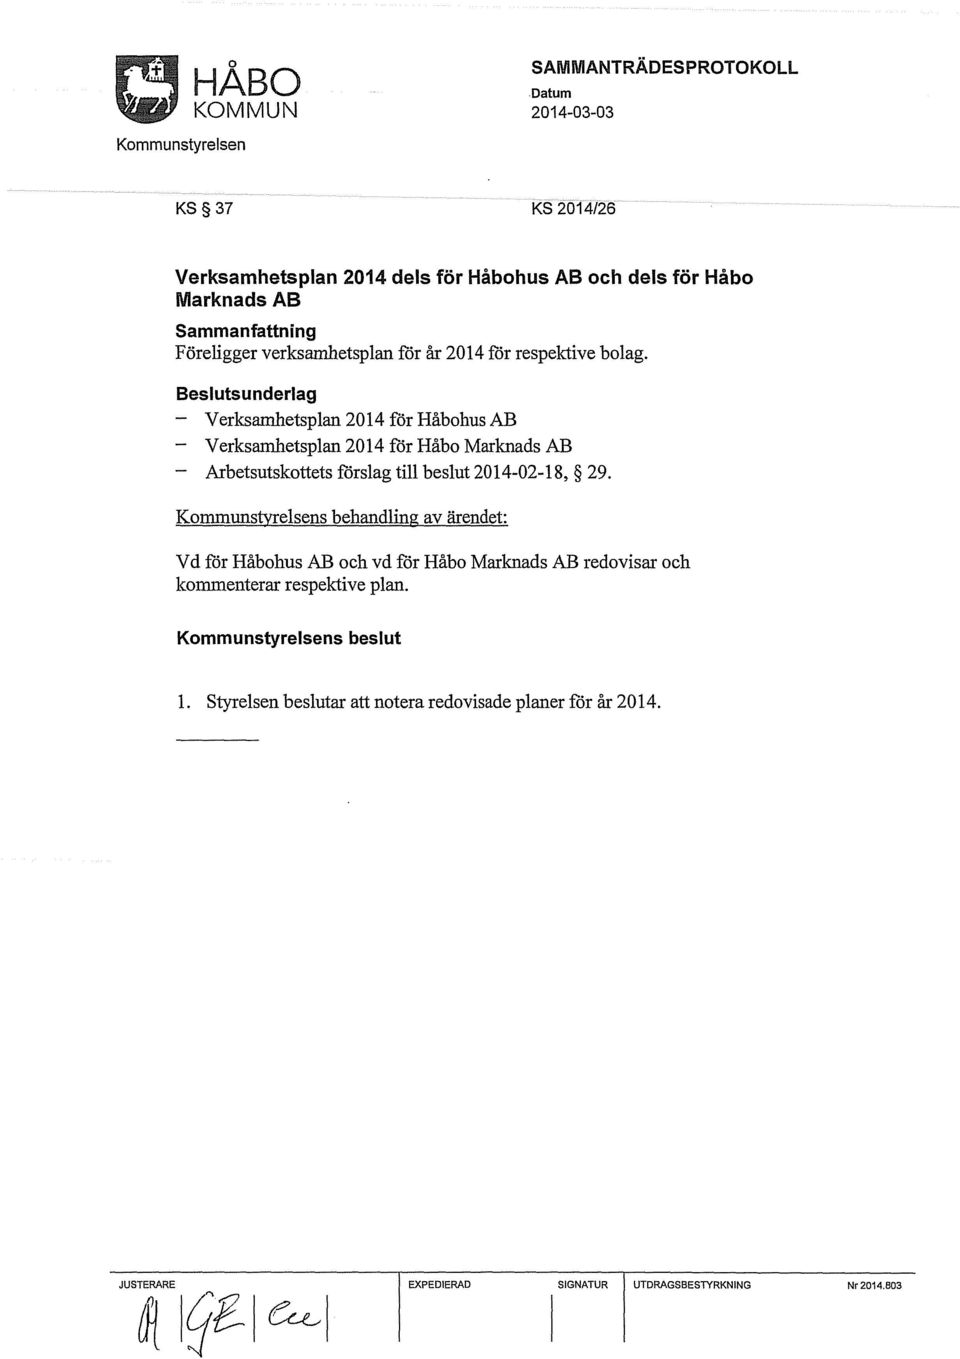 Beslutsunderlag - Verksamhetsplan 2014 för Håbohus AB - Verksamhetsplan 2014 för Håbo Marknads AB Arbetsutskottets förslag till beslut